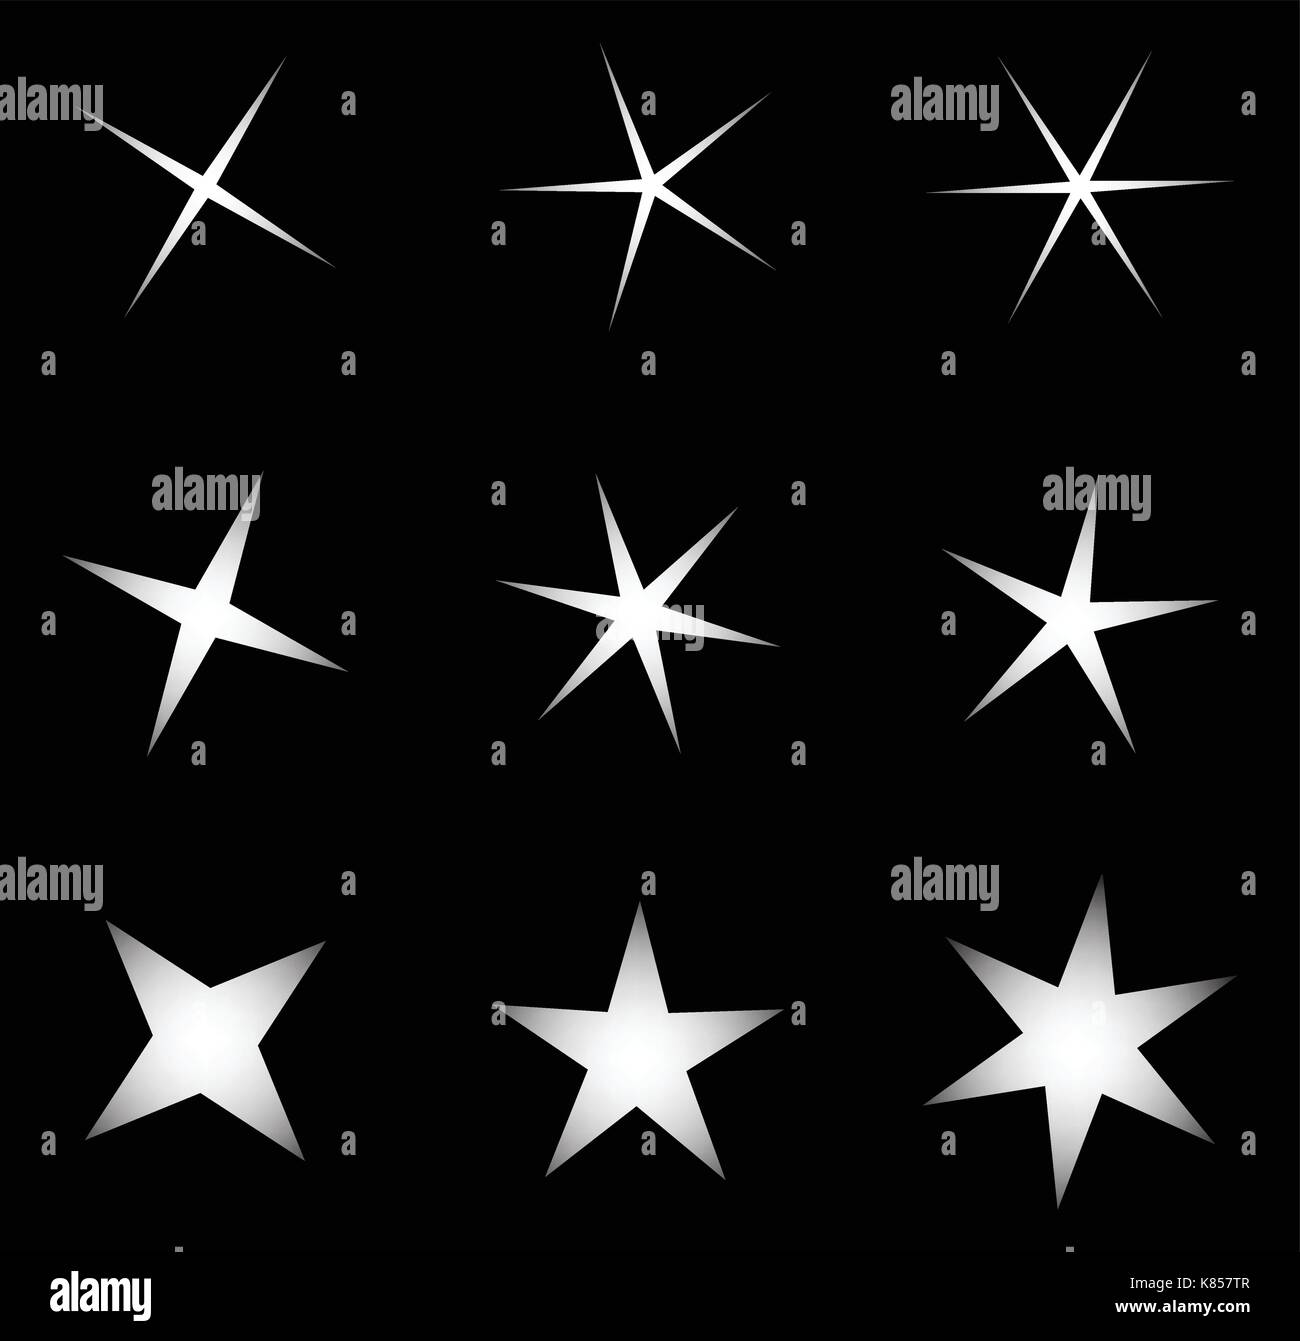 Transparente Sterne Vektor symbol Icon Design. Schöne Abbildung: Leuchtende Lichteffekt Sterne Bursts mit funkelt auf transparentem Hintergrund für Ch Stock Vektor